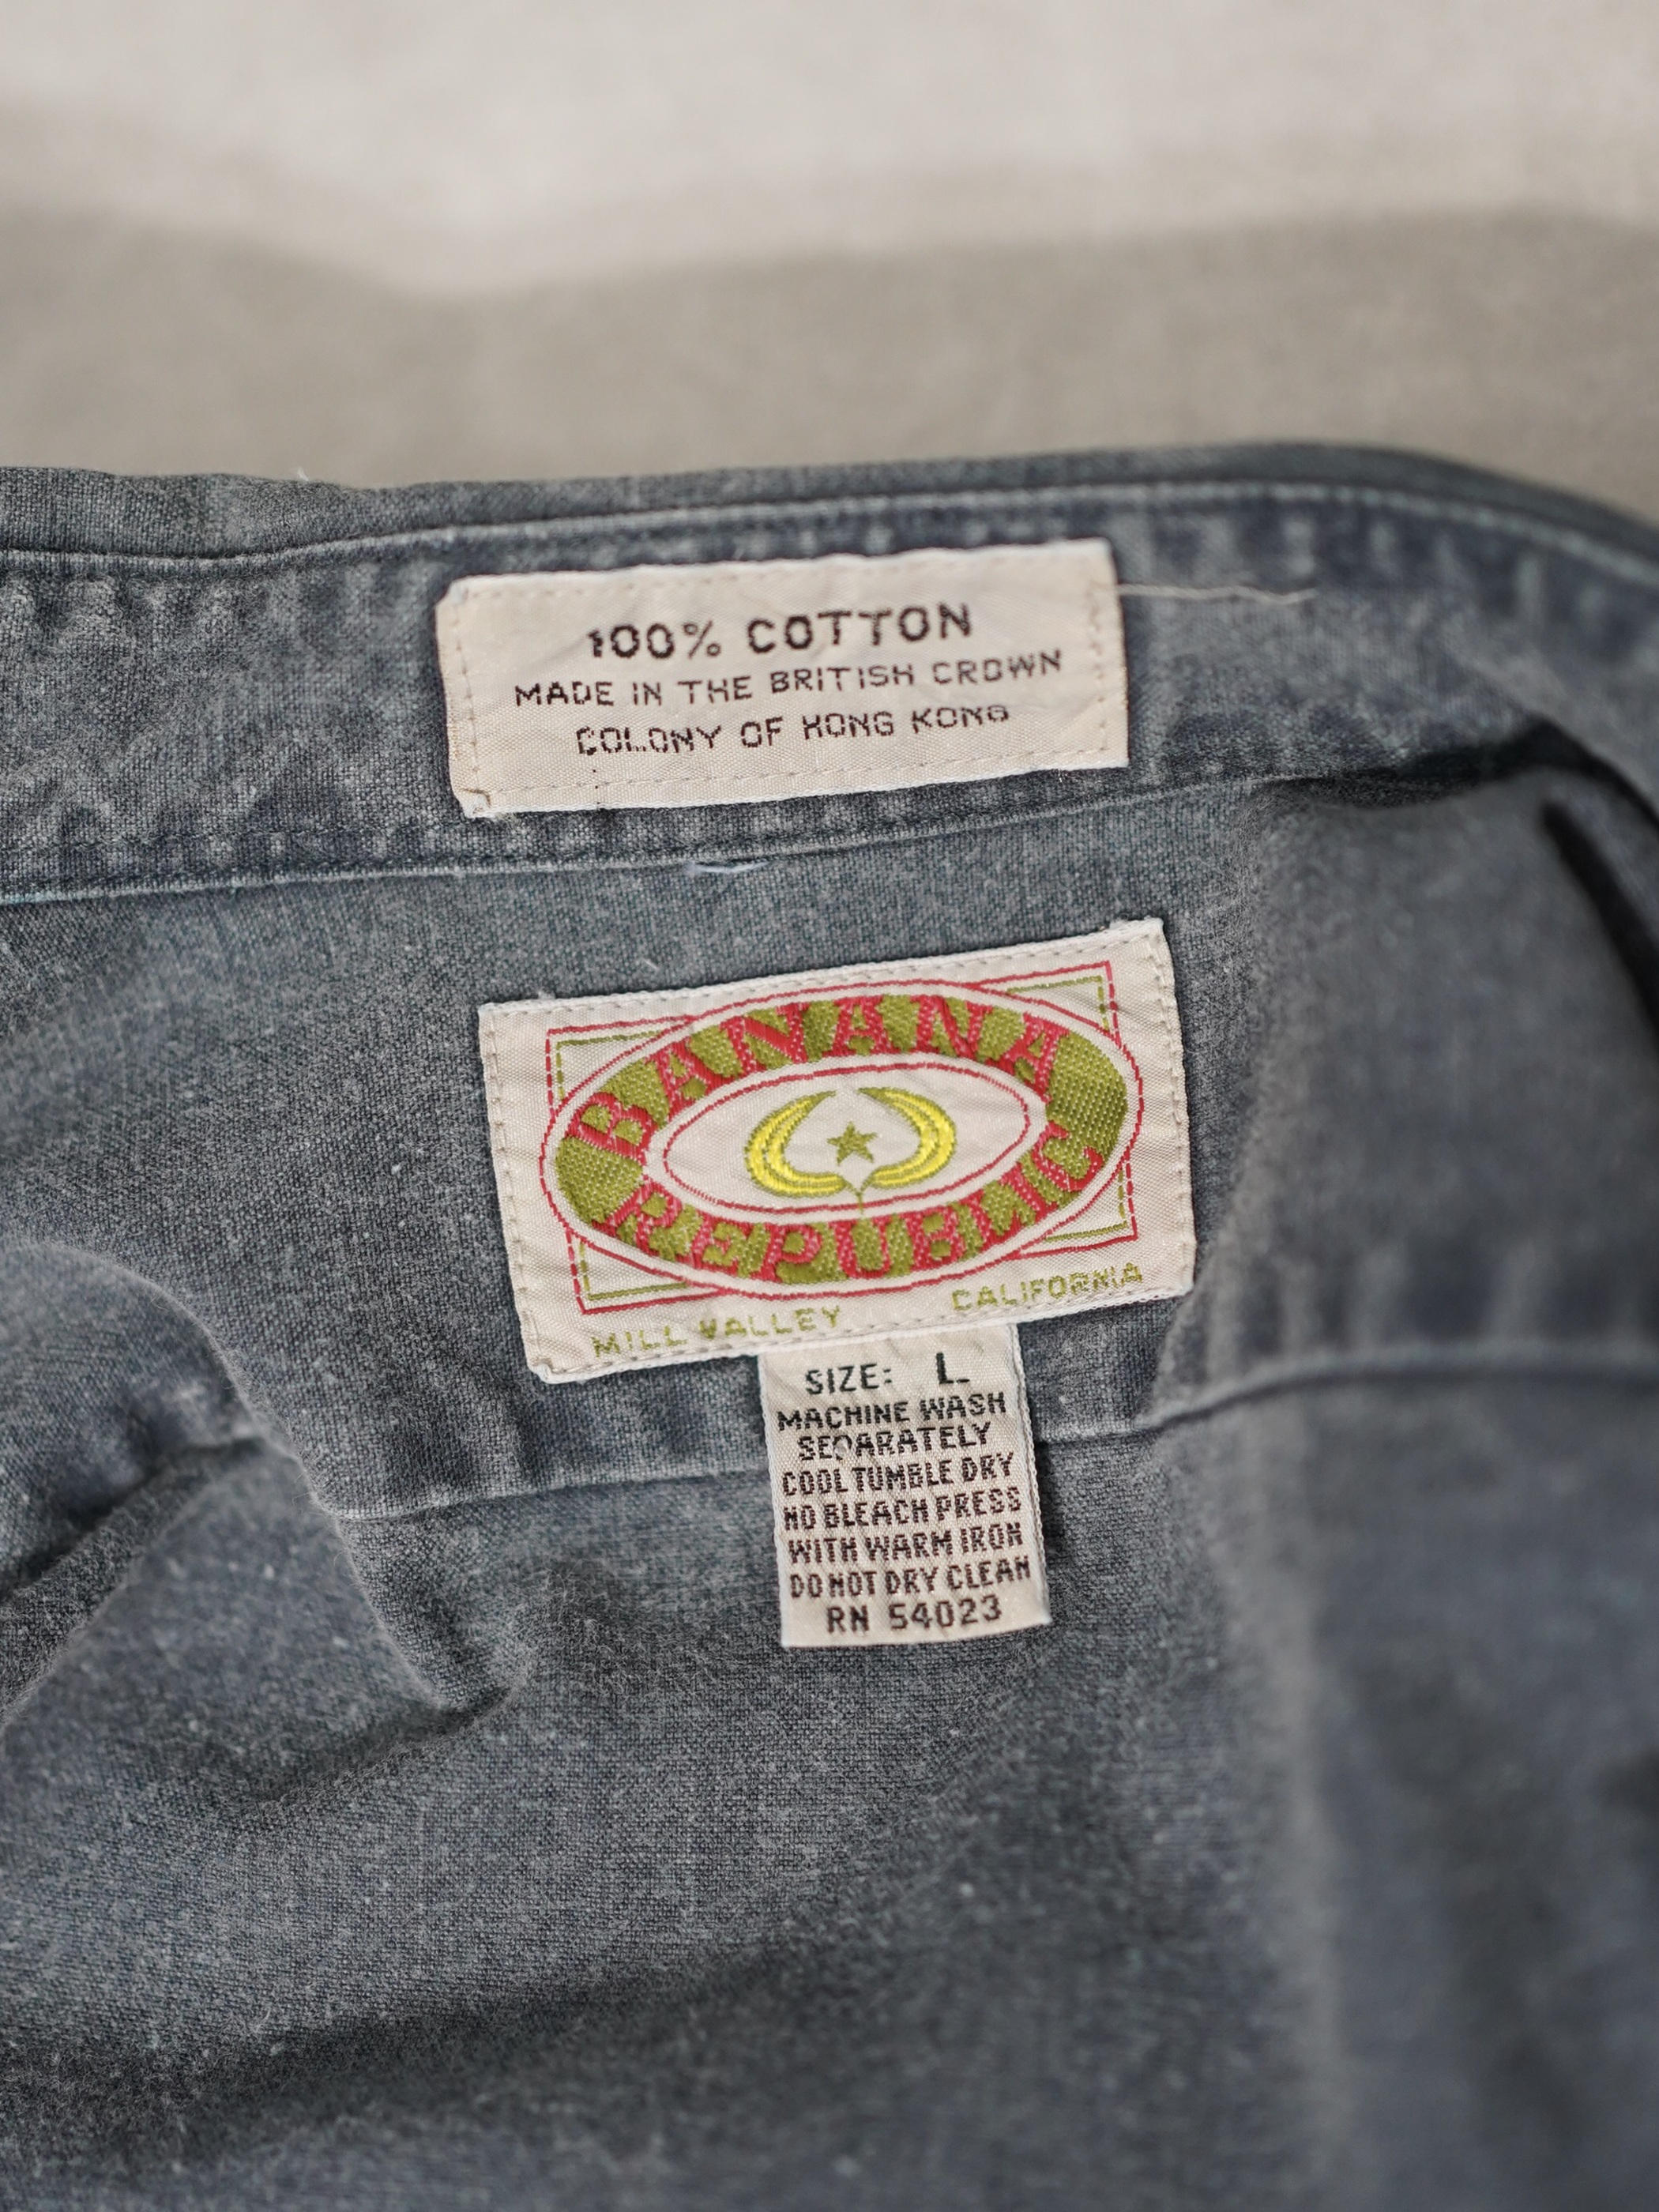 1970’s BANANA REPUBLIC Cotton Safari shirts/Made in The British Crown colony of Hong Kong